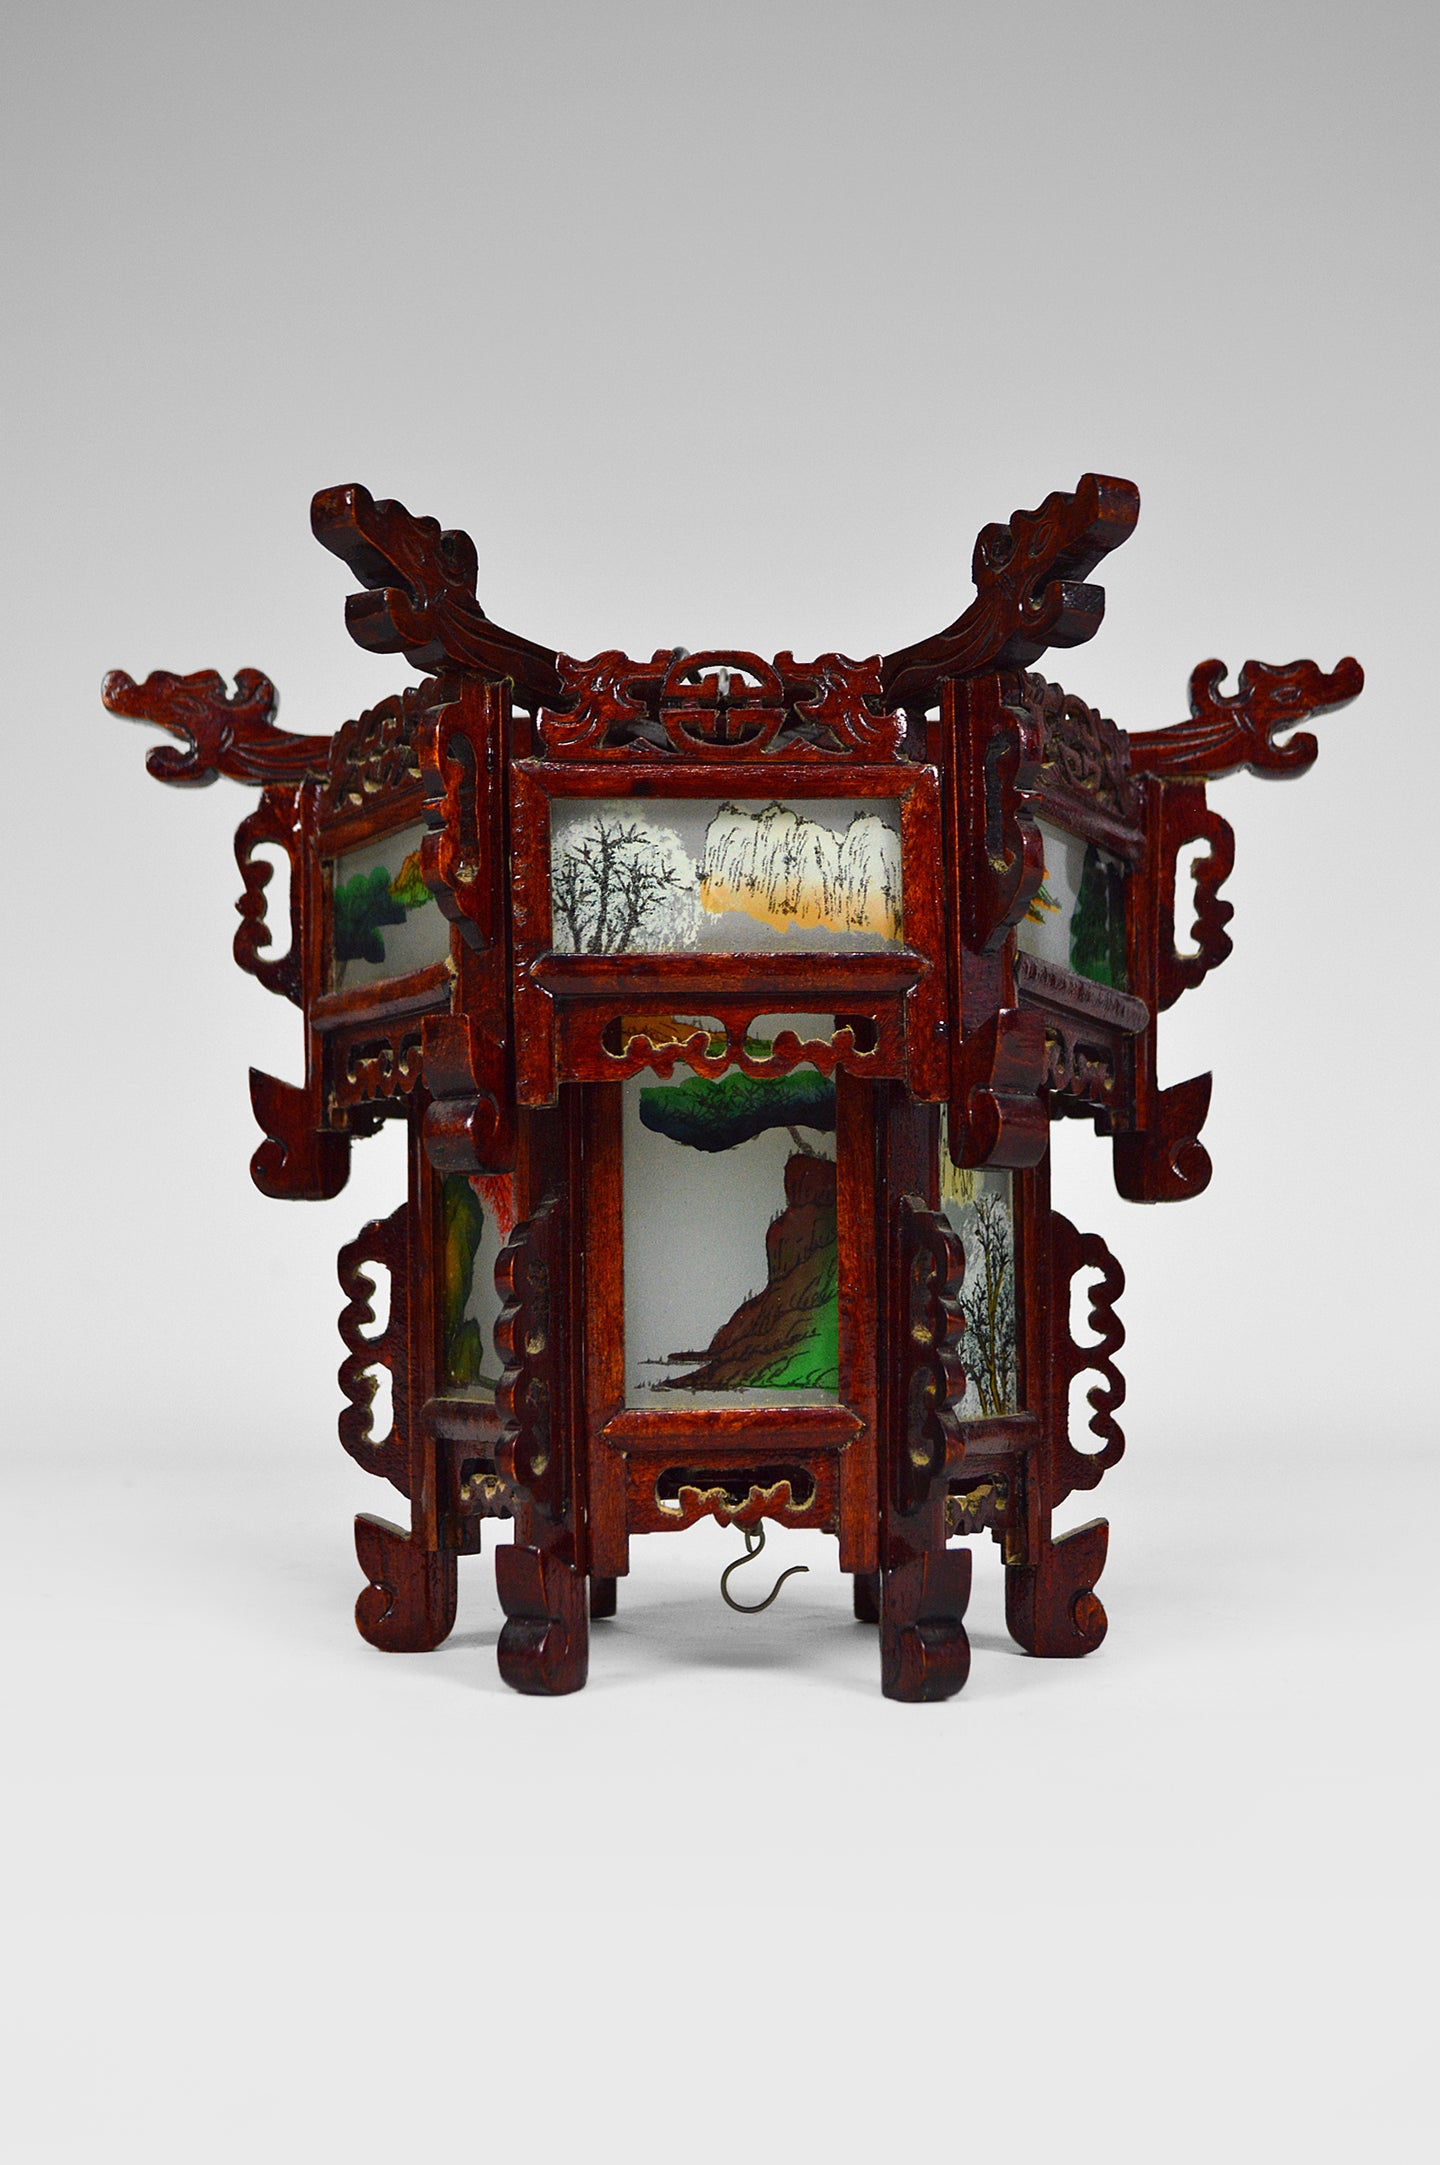 Petite lanterne asiatique en bois sculpté de dragons et panneaux de verre peints